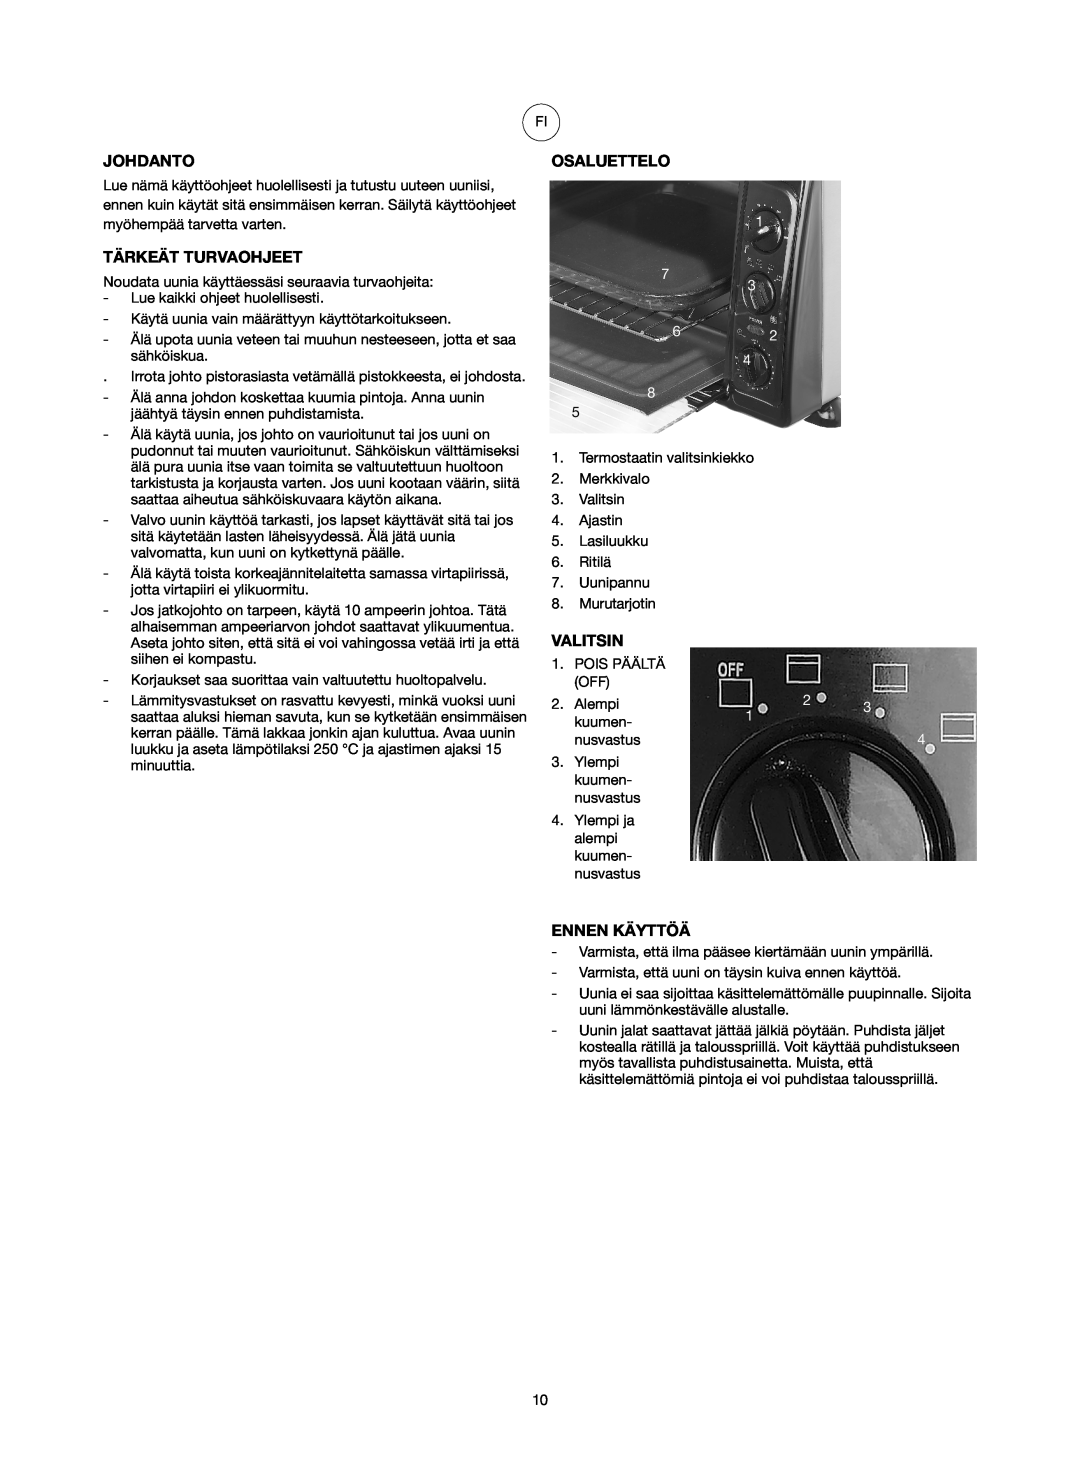 Ide Line 751-079 manual Johdanto, Tärkeät Turvaohjeet, Osaluettelo, Valitsin, Ennen Käyttöä 